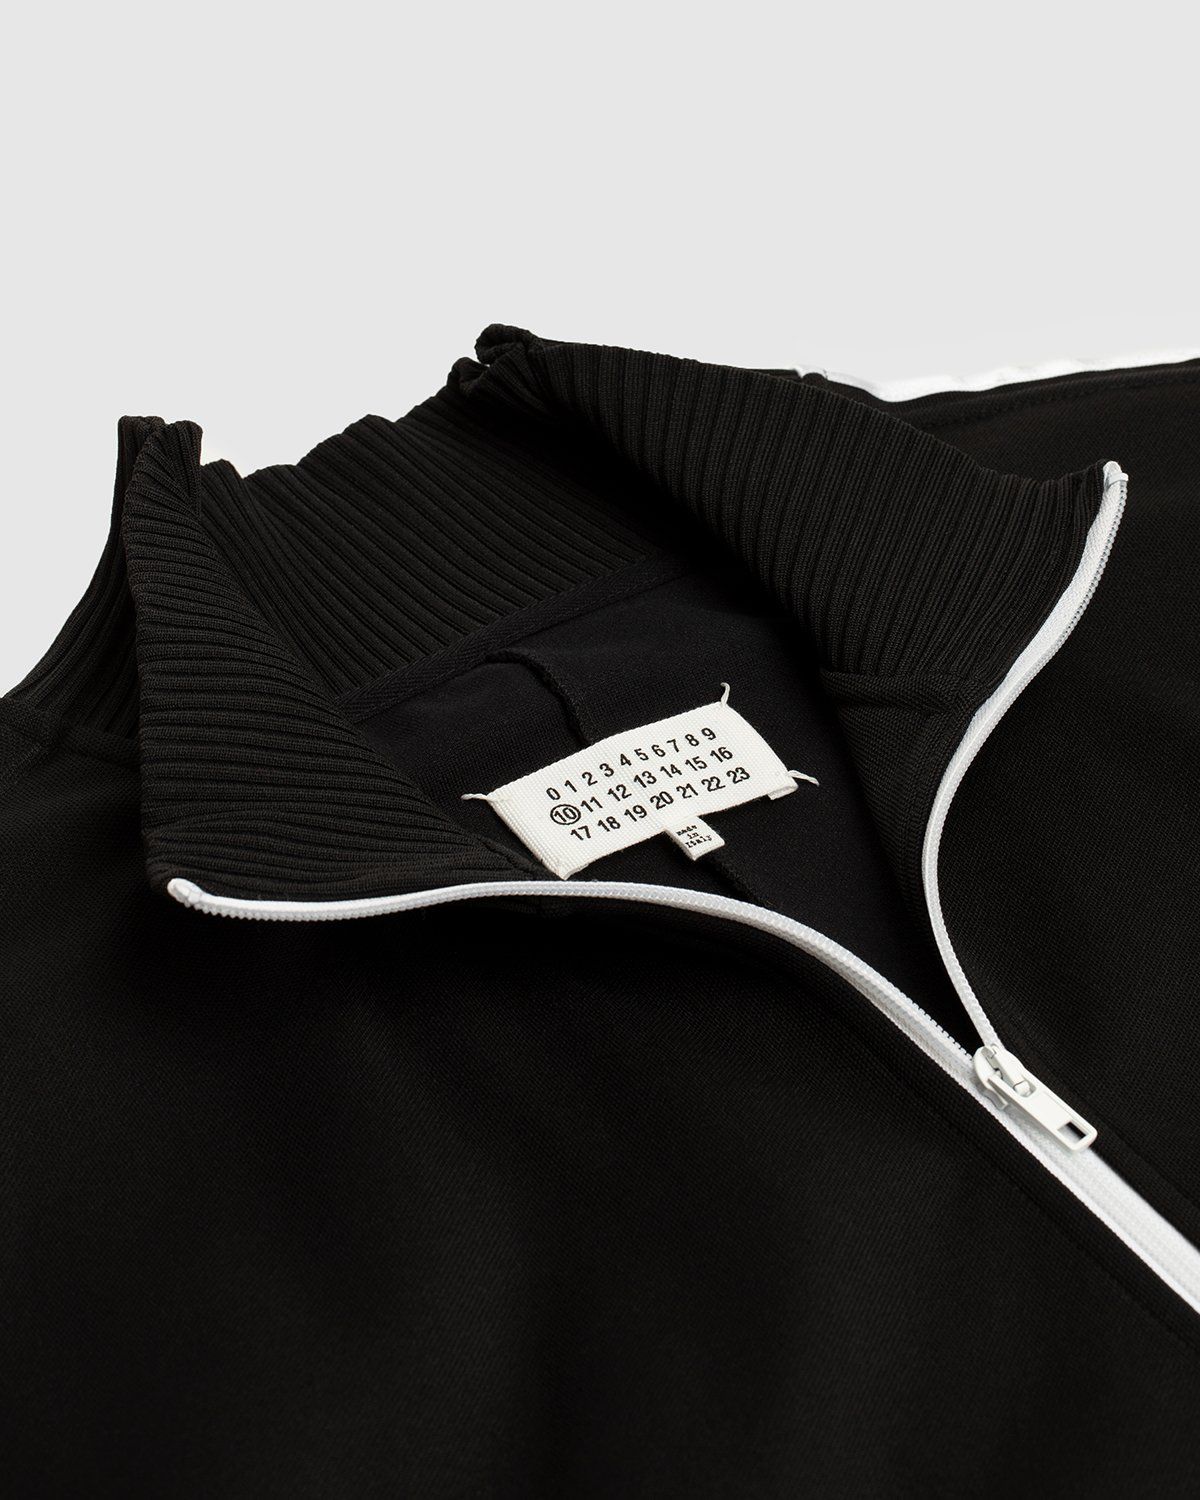 Maison Margiela – Track Jacket - Outerwear - Black - Image 6